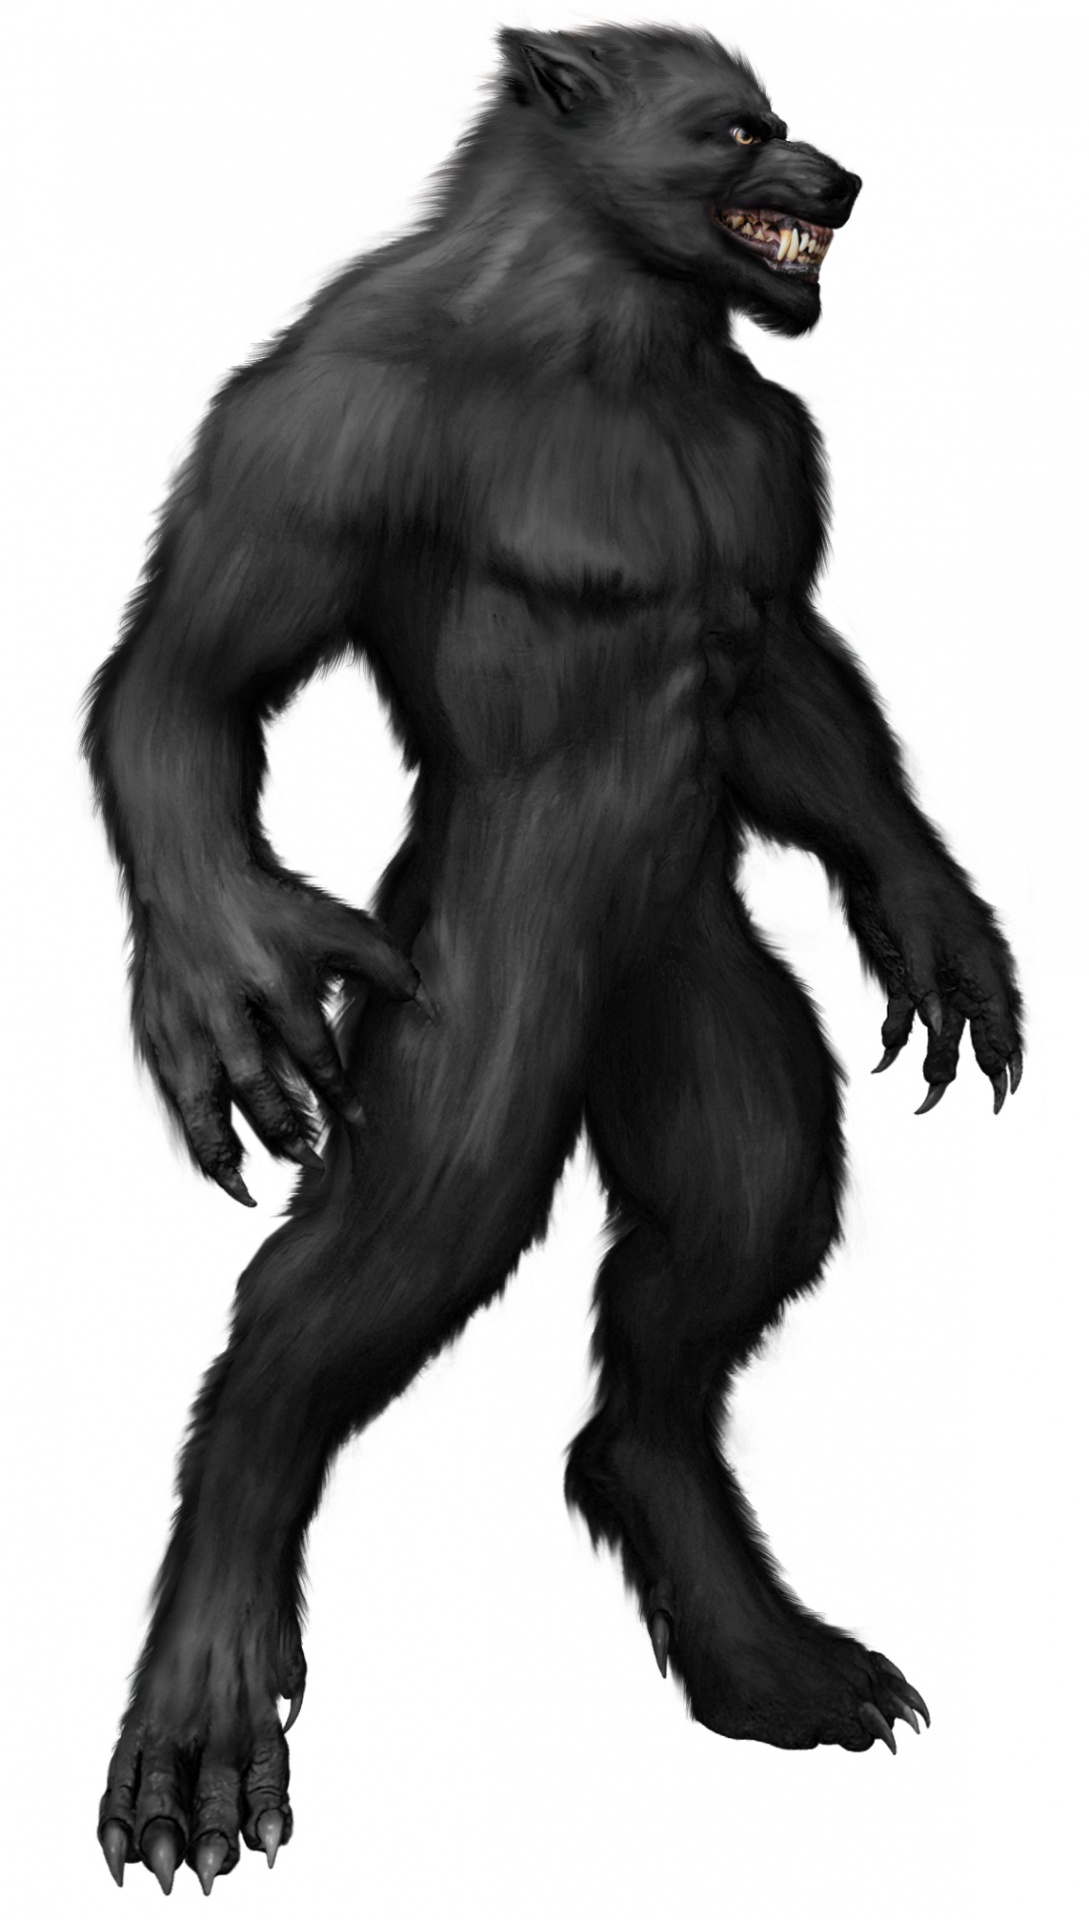 A ferocious werewolf standing and snarling